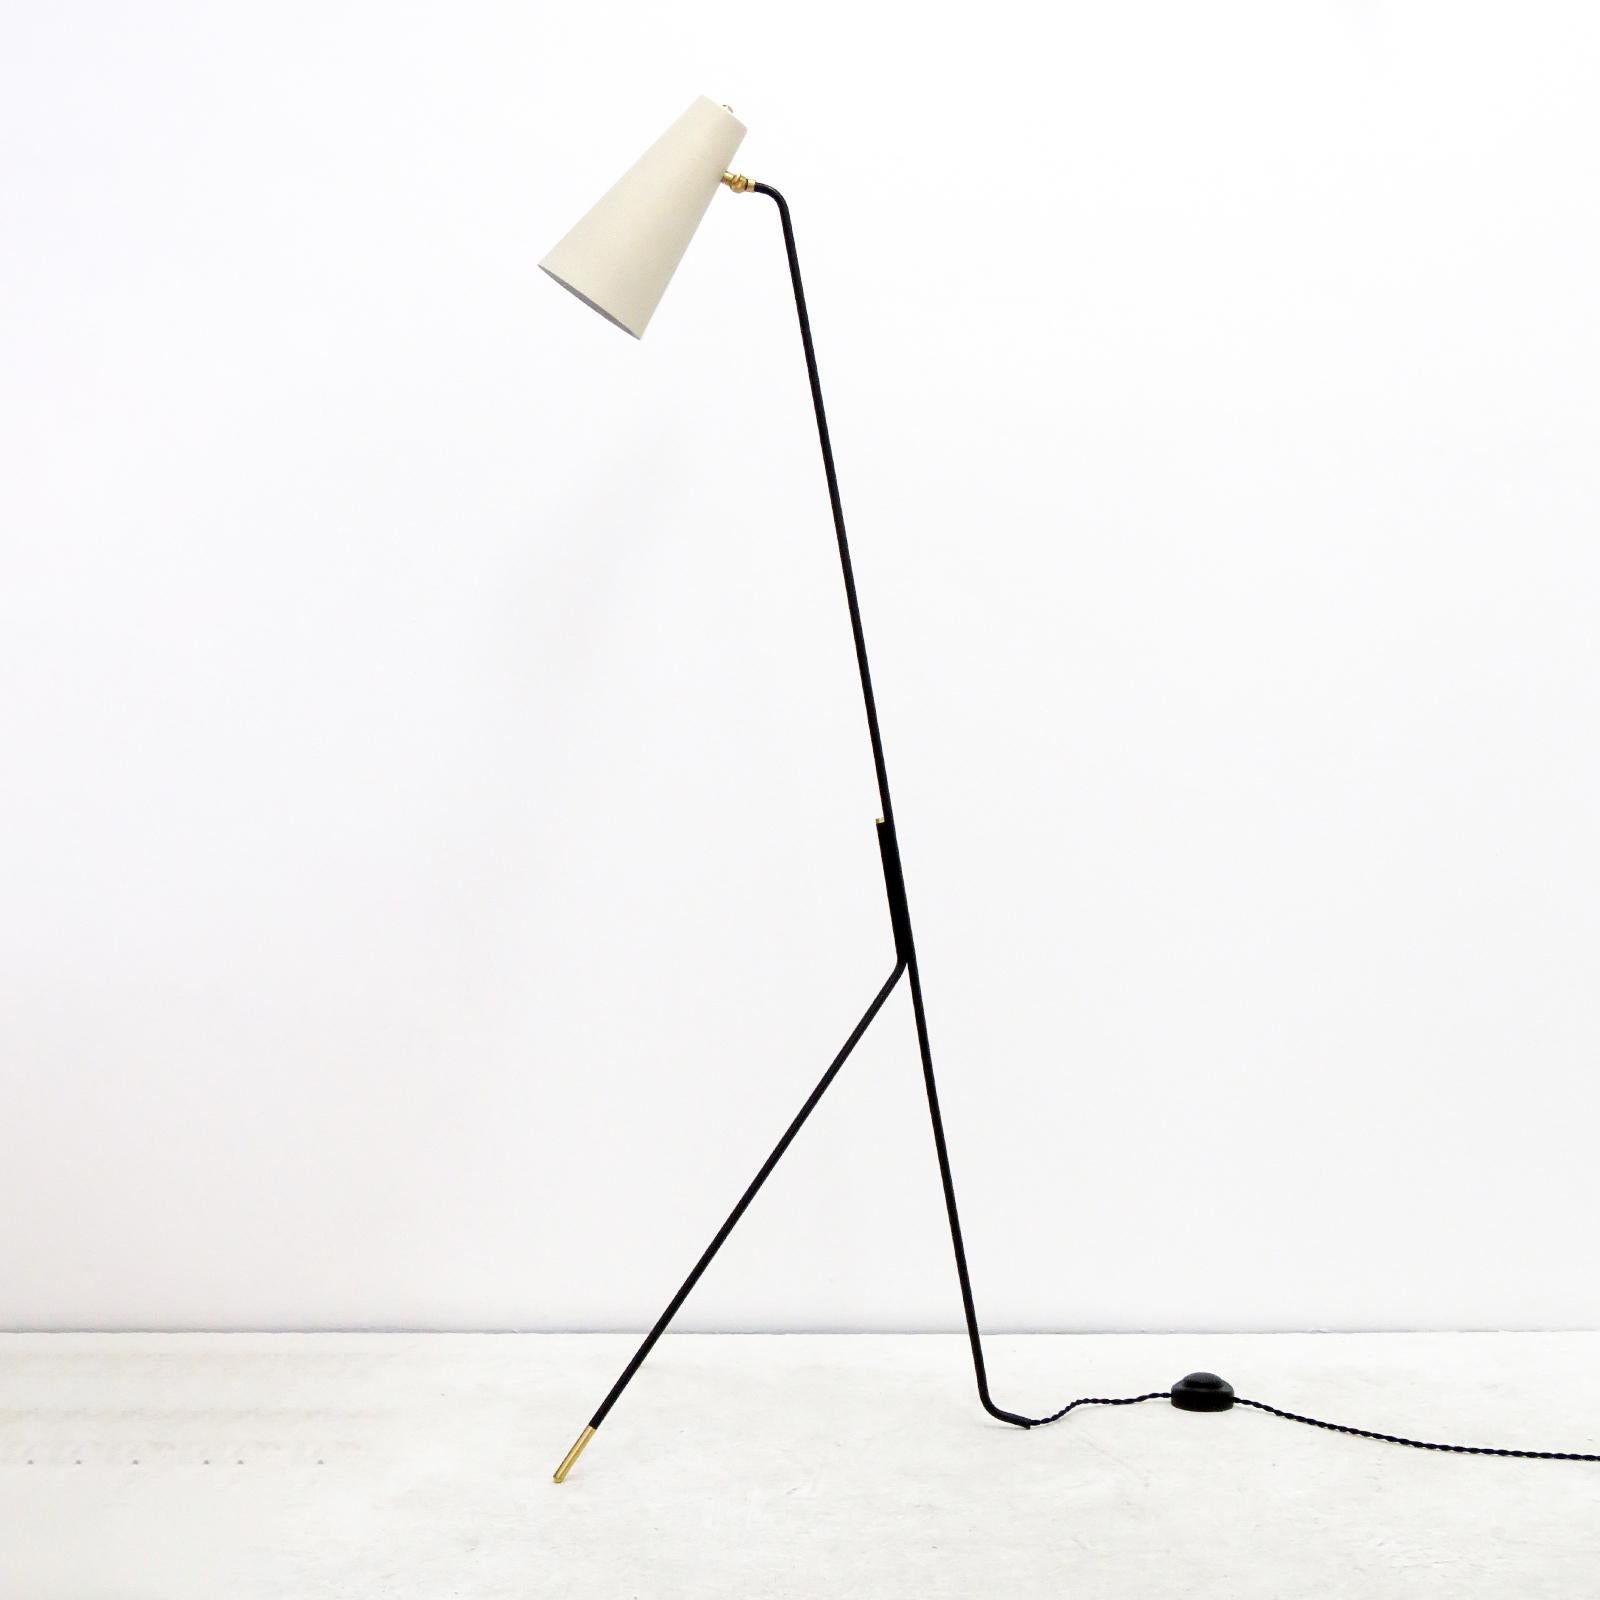 Wunderschöne minimalistische Stehlampe von Gallery L7, handgefertigt und fertiggestellt in Los Angeles, schwarz pulverbeschichtetes Gestell mit Messingakzenten und eierschalenfarbenem großen konischen Schirm. Eine E26-Fassung pro Lampe, max. 75 W